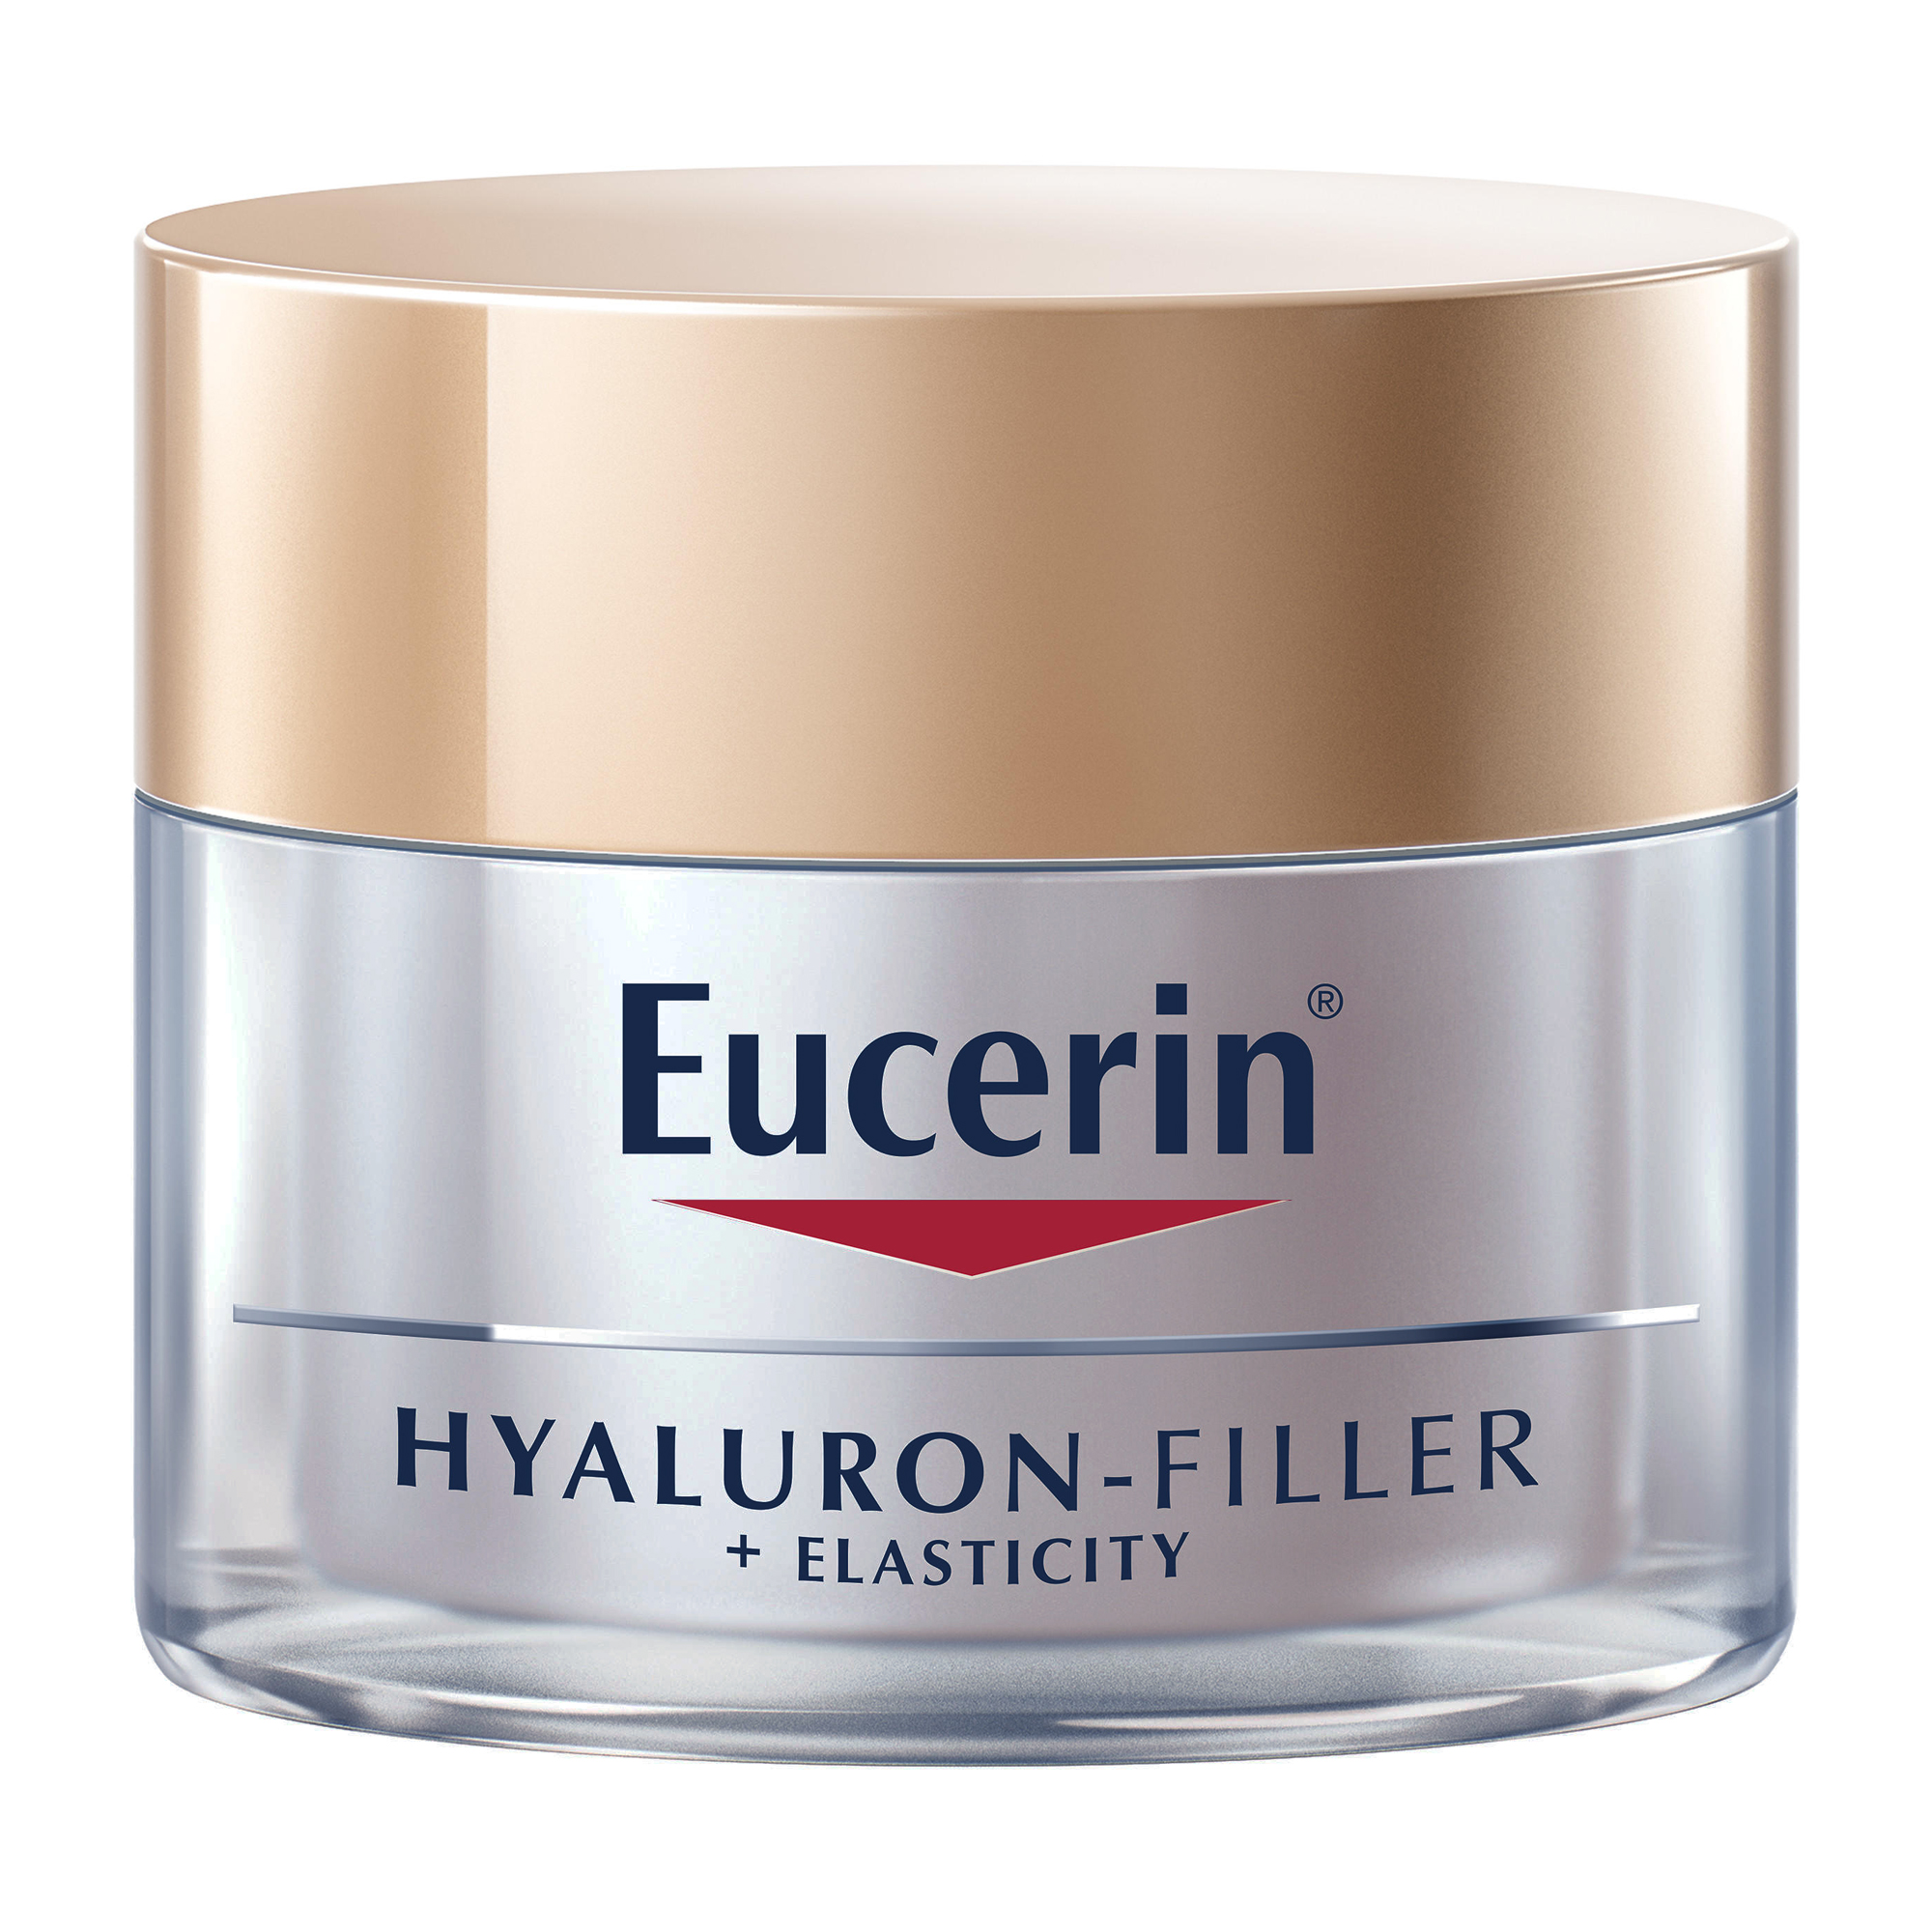 Eucerin Hyaluron-Filler Creme de nuit + Elasticité Anti Age Arctiine accélère également le processus de renouvellement du collagène dans les cellules de la peau